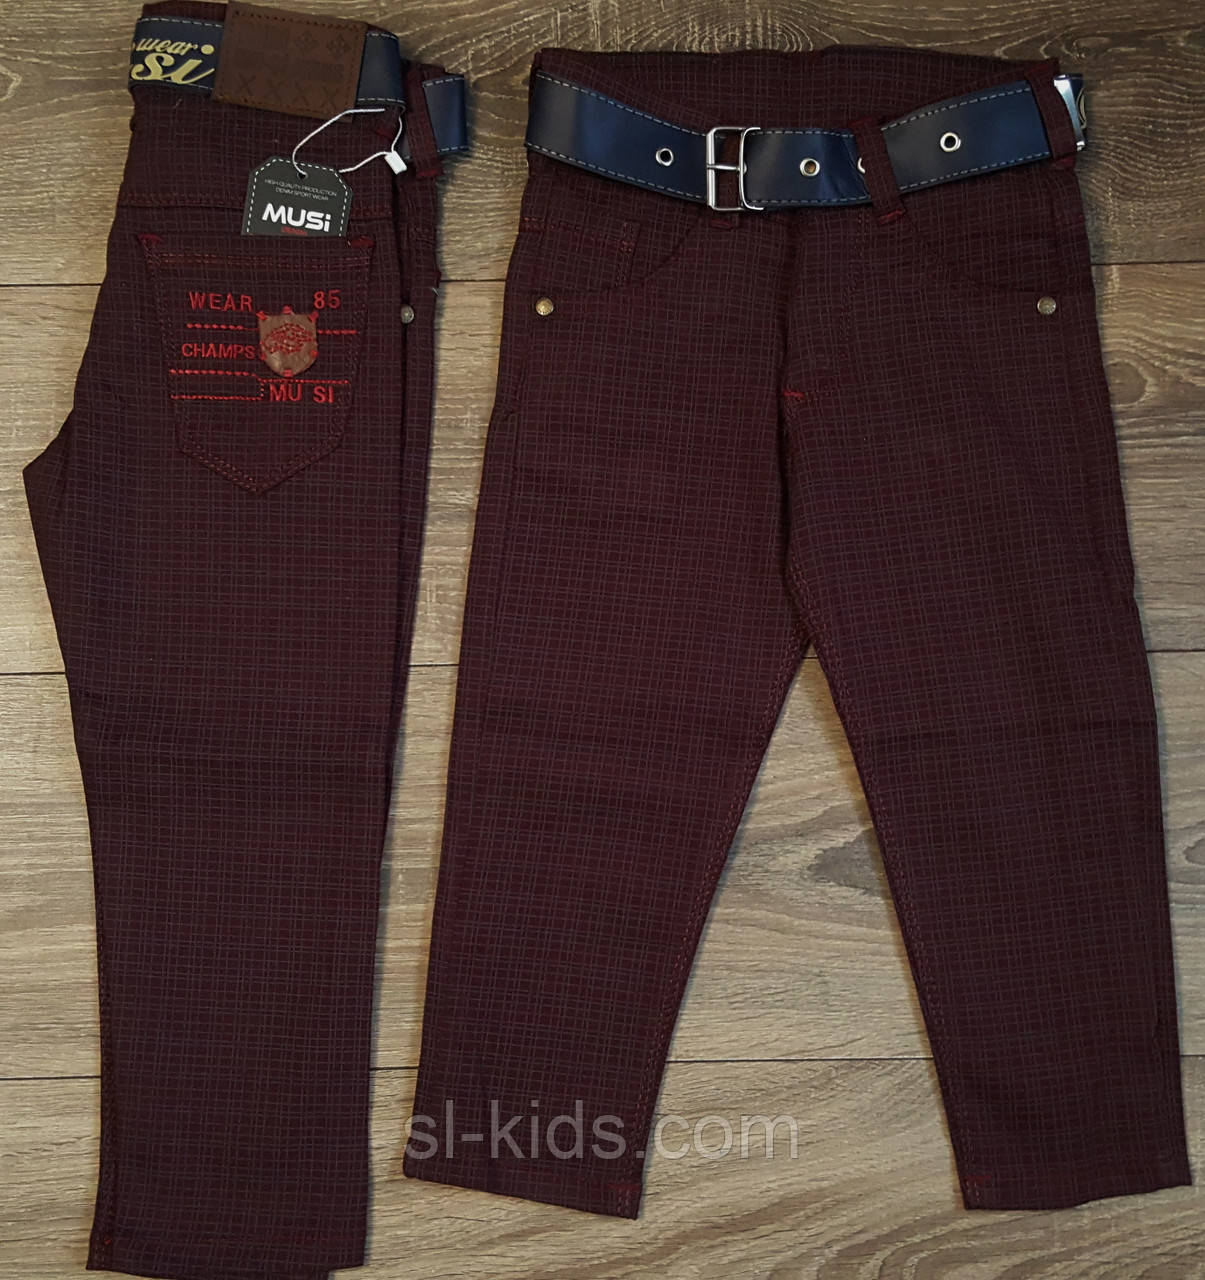 Стильні штани,джинси для хлопчика 2-6 років(бордо клітина) пр. Туреччина